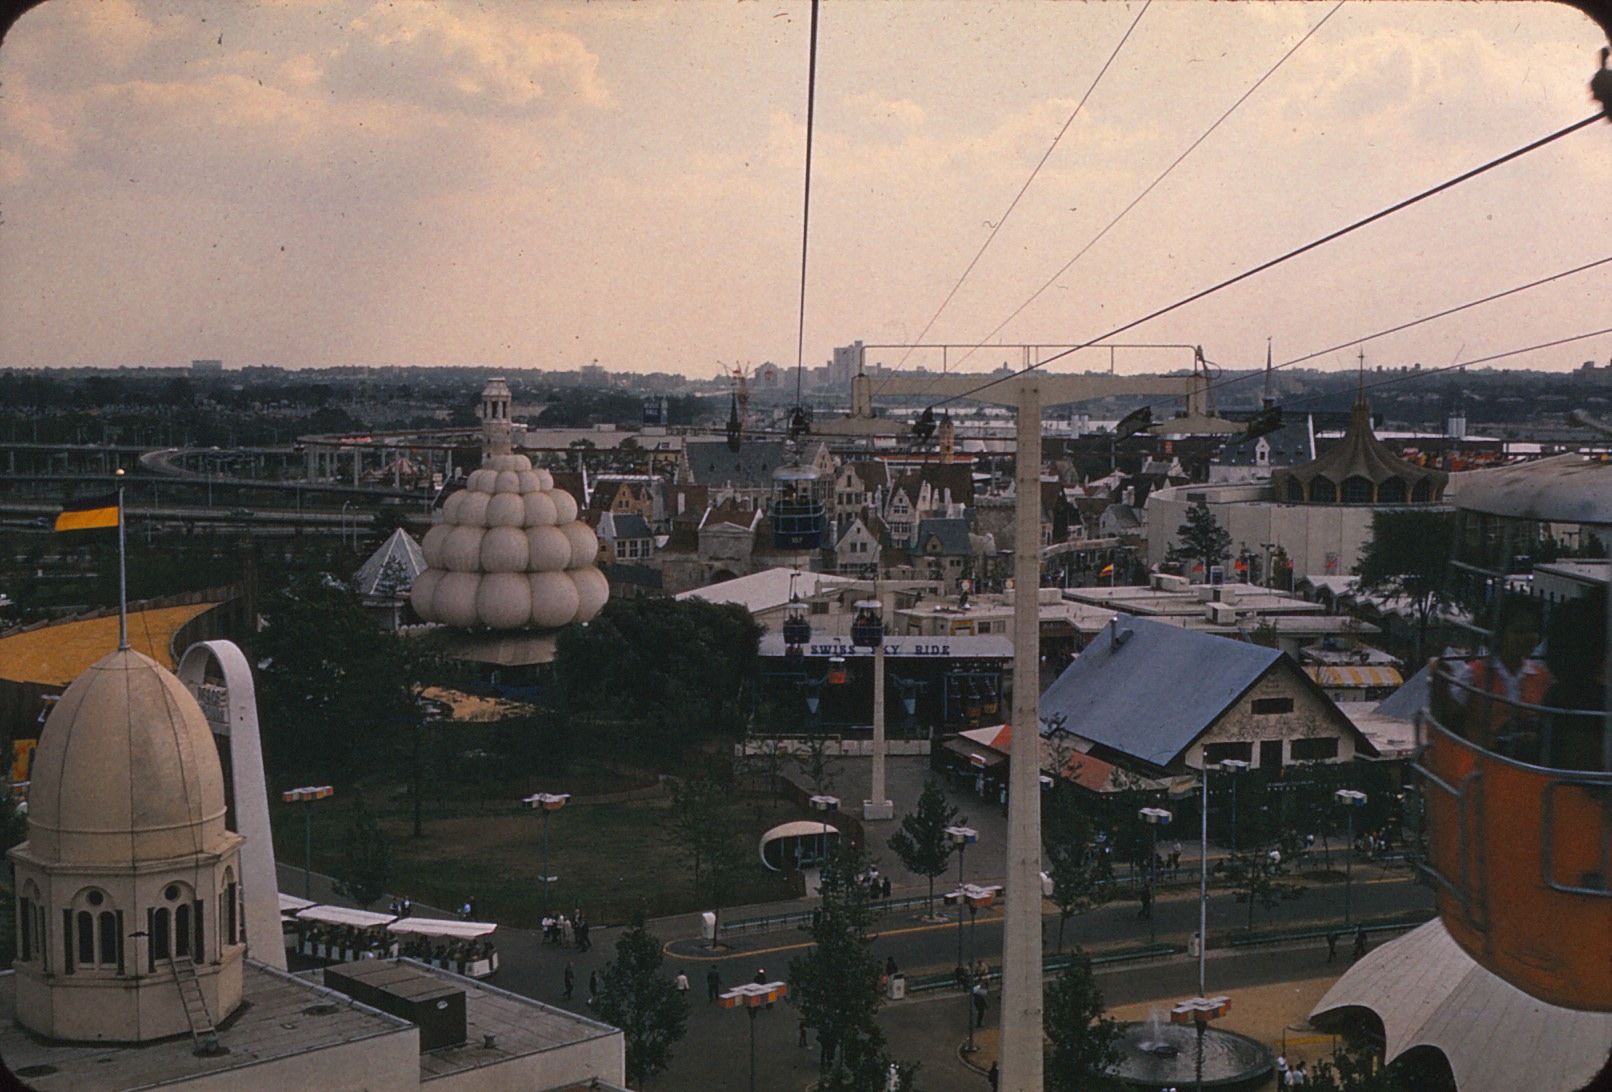 64 Worlds Fair__Richard Grier 17.jpg